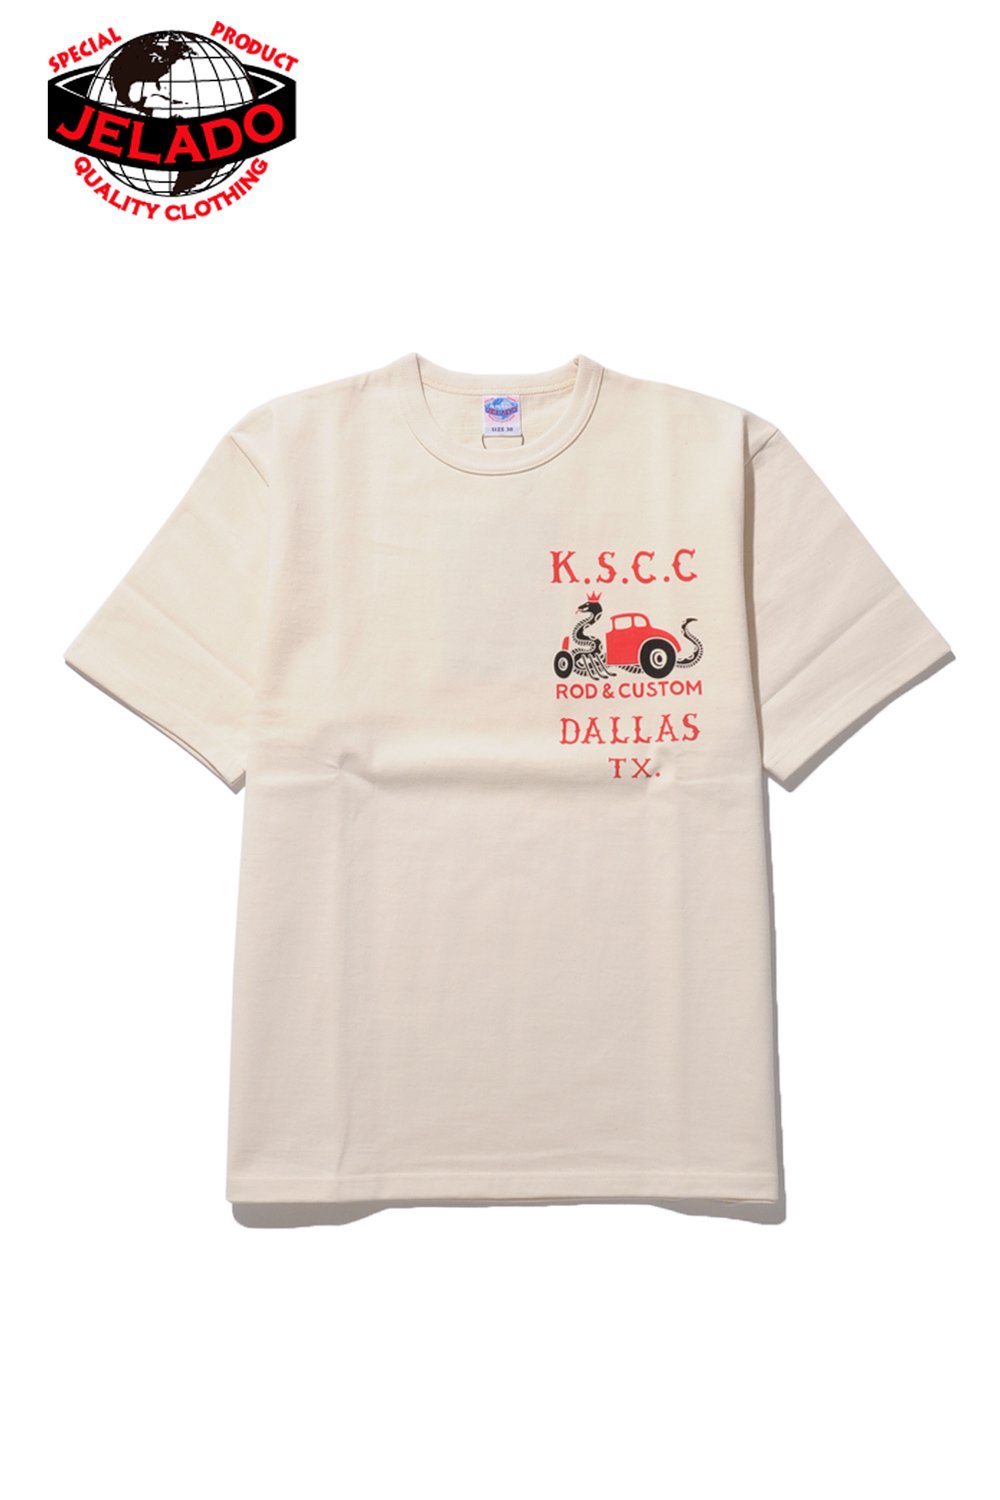 JELADO(ジェラード) Tシャツ HOT ROD TEE JP21204 通販正規取扱|ハーレムストア